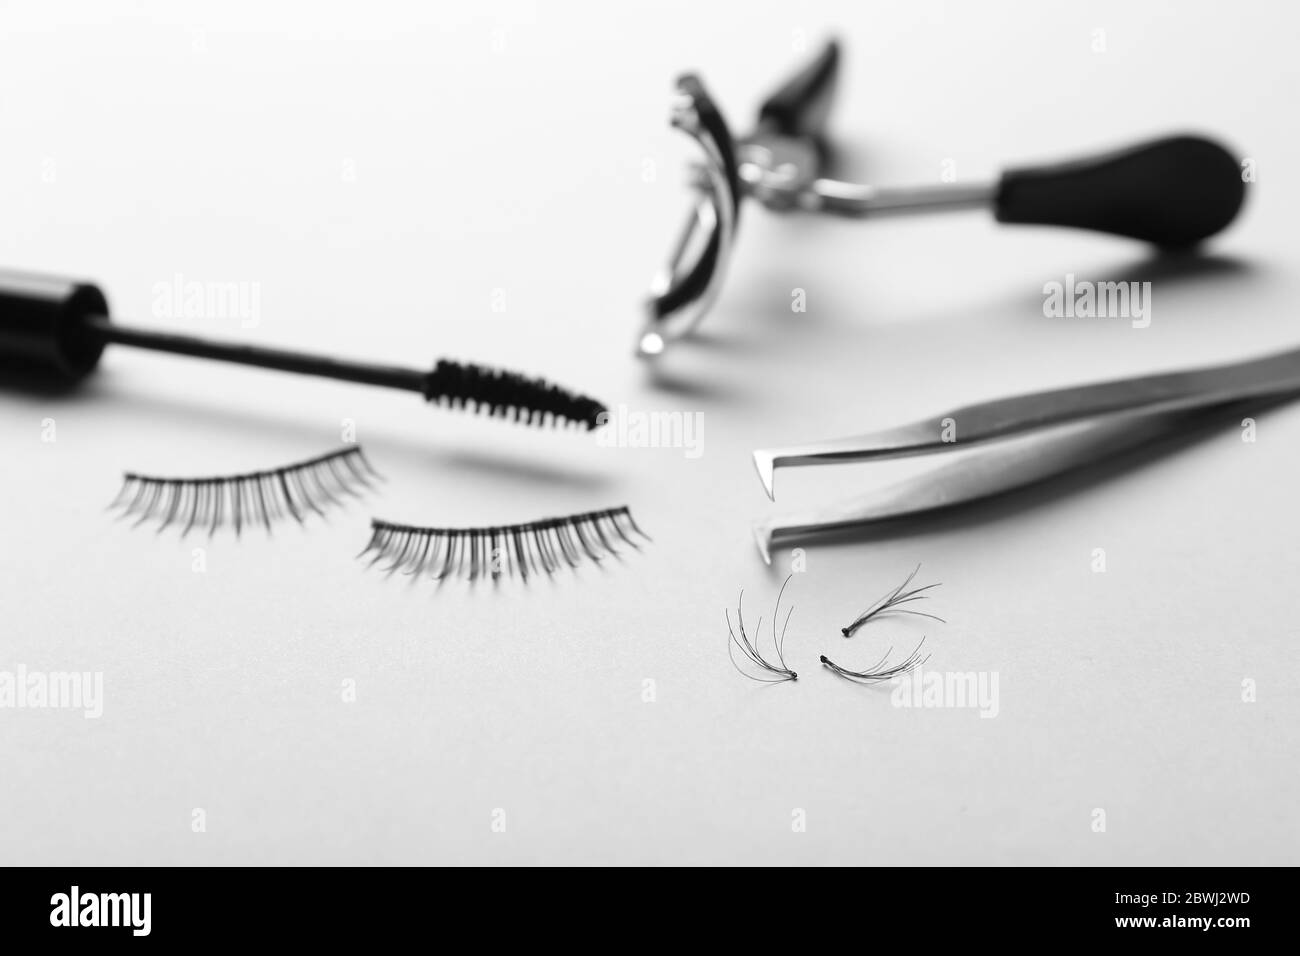 Mascara, gefälschte Wimpern, Pinzette und Lockenstab auf hellem Hintergrund  Stockfotografie - Alamy